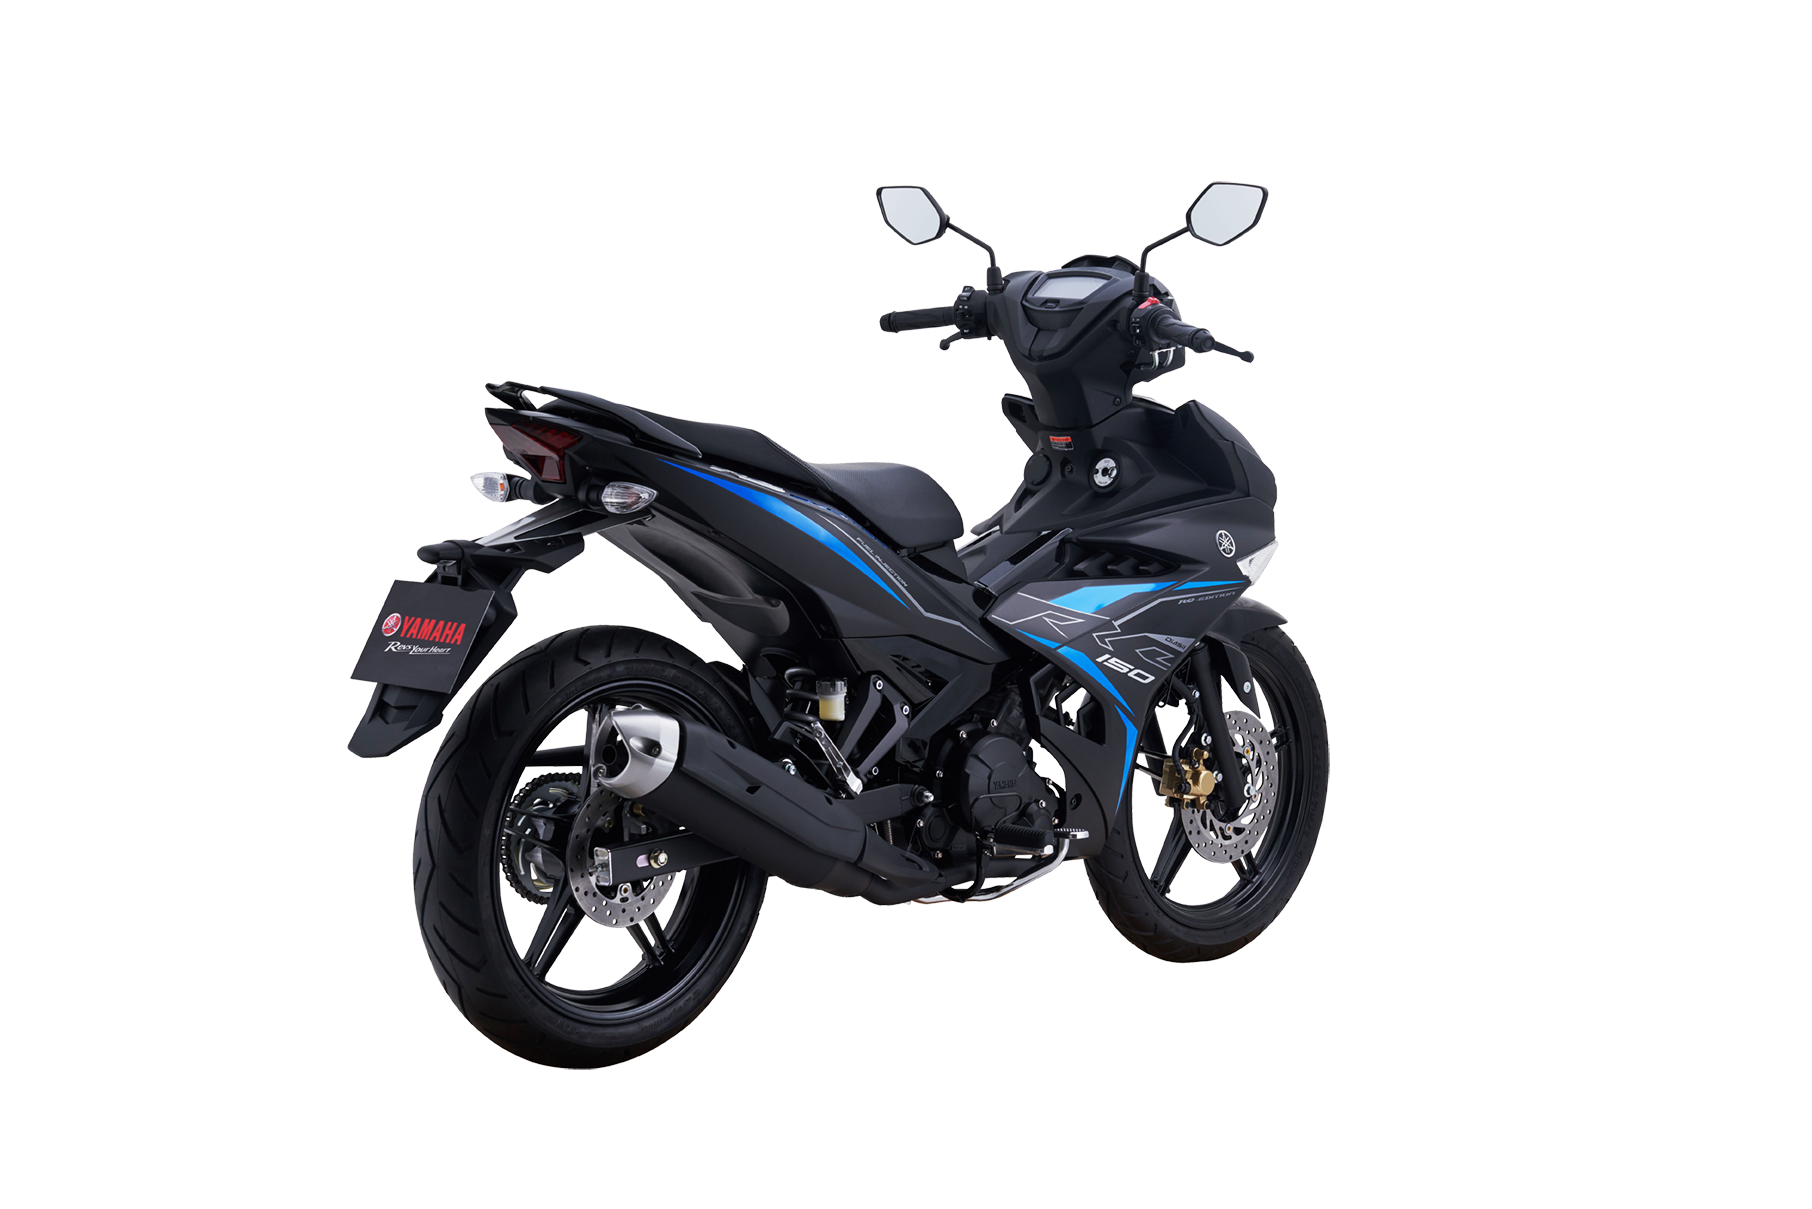 Yamaha Exciter 150 phiên bản giới hạn tại Việt Nam giá 48 triệu đồng  Xe  máy